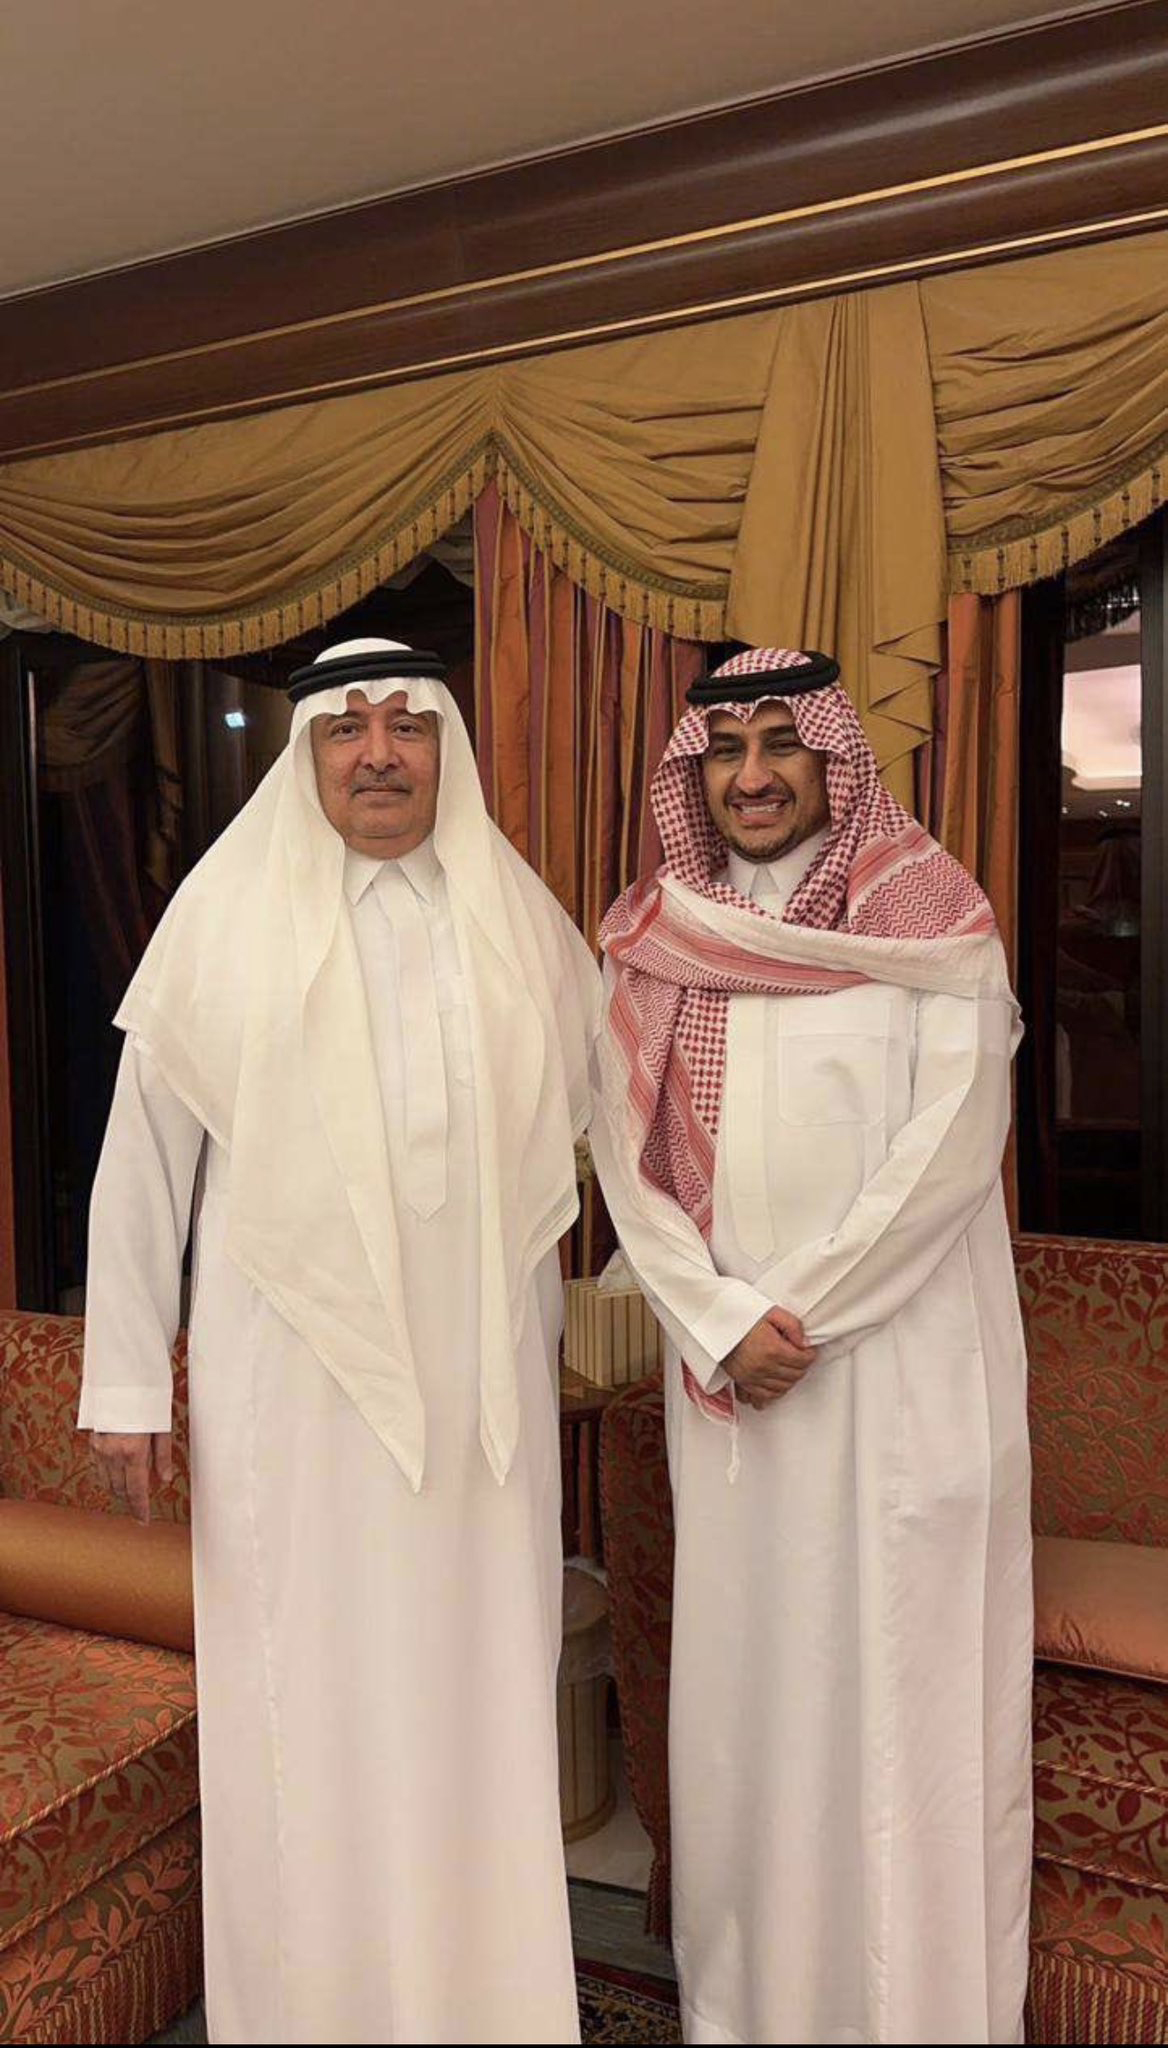 الأمير أحمد بصحبة الأمير فيصل بن عبد الله بن عبد العزيز آل سعود